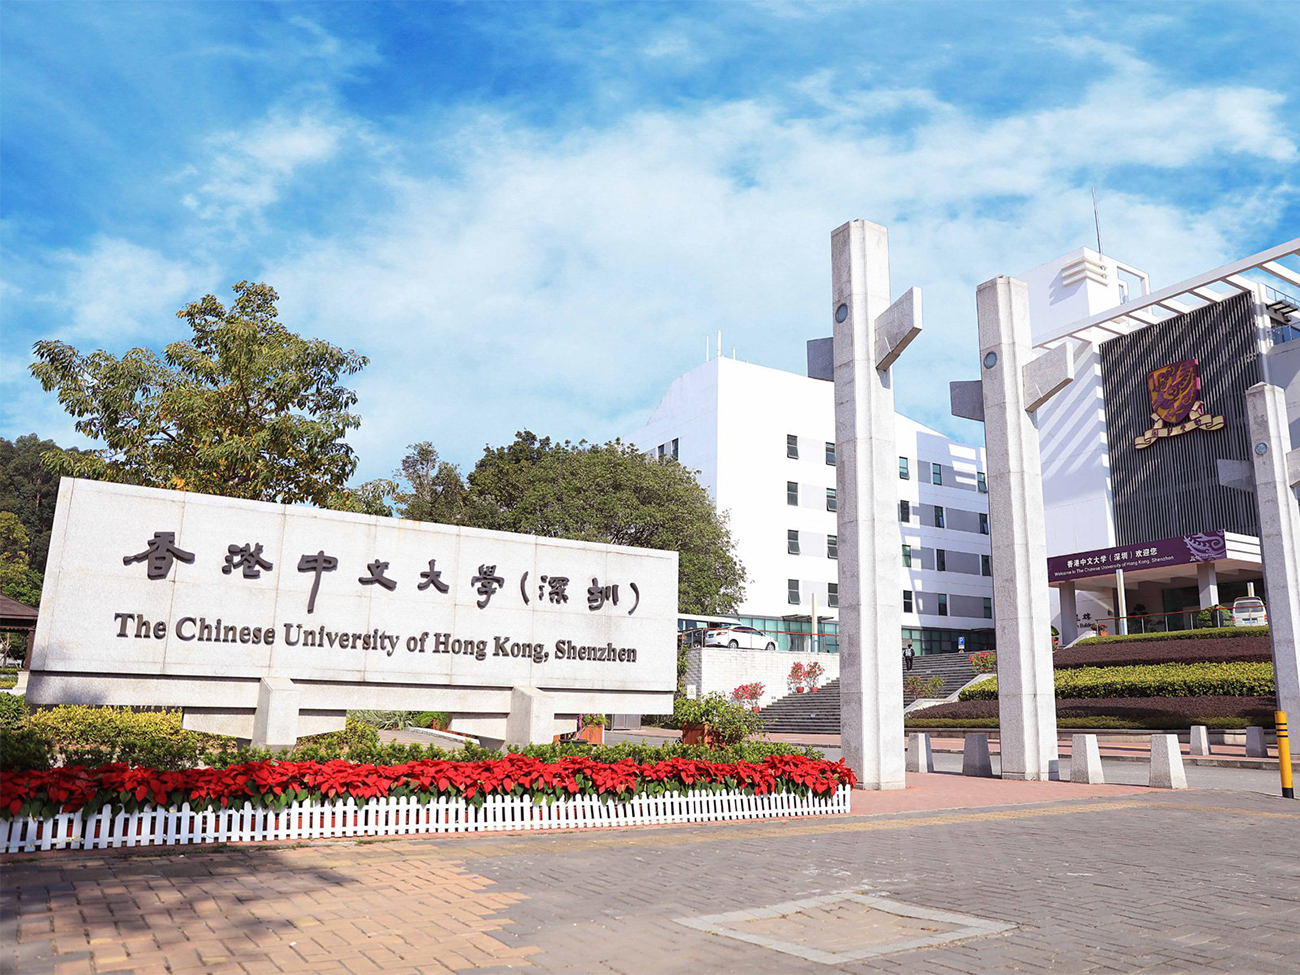 The Chinese University of Hong Kong,Shenzhen (CUHK-Shenzhen)